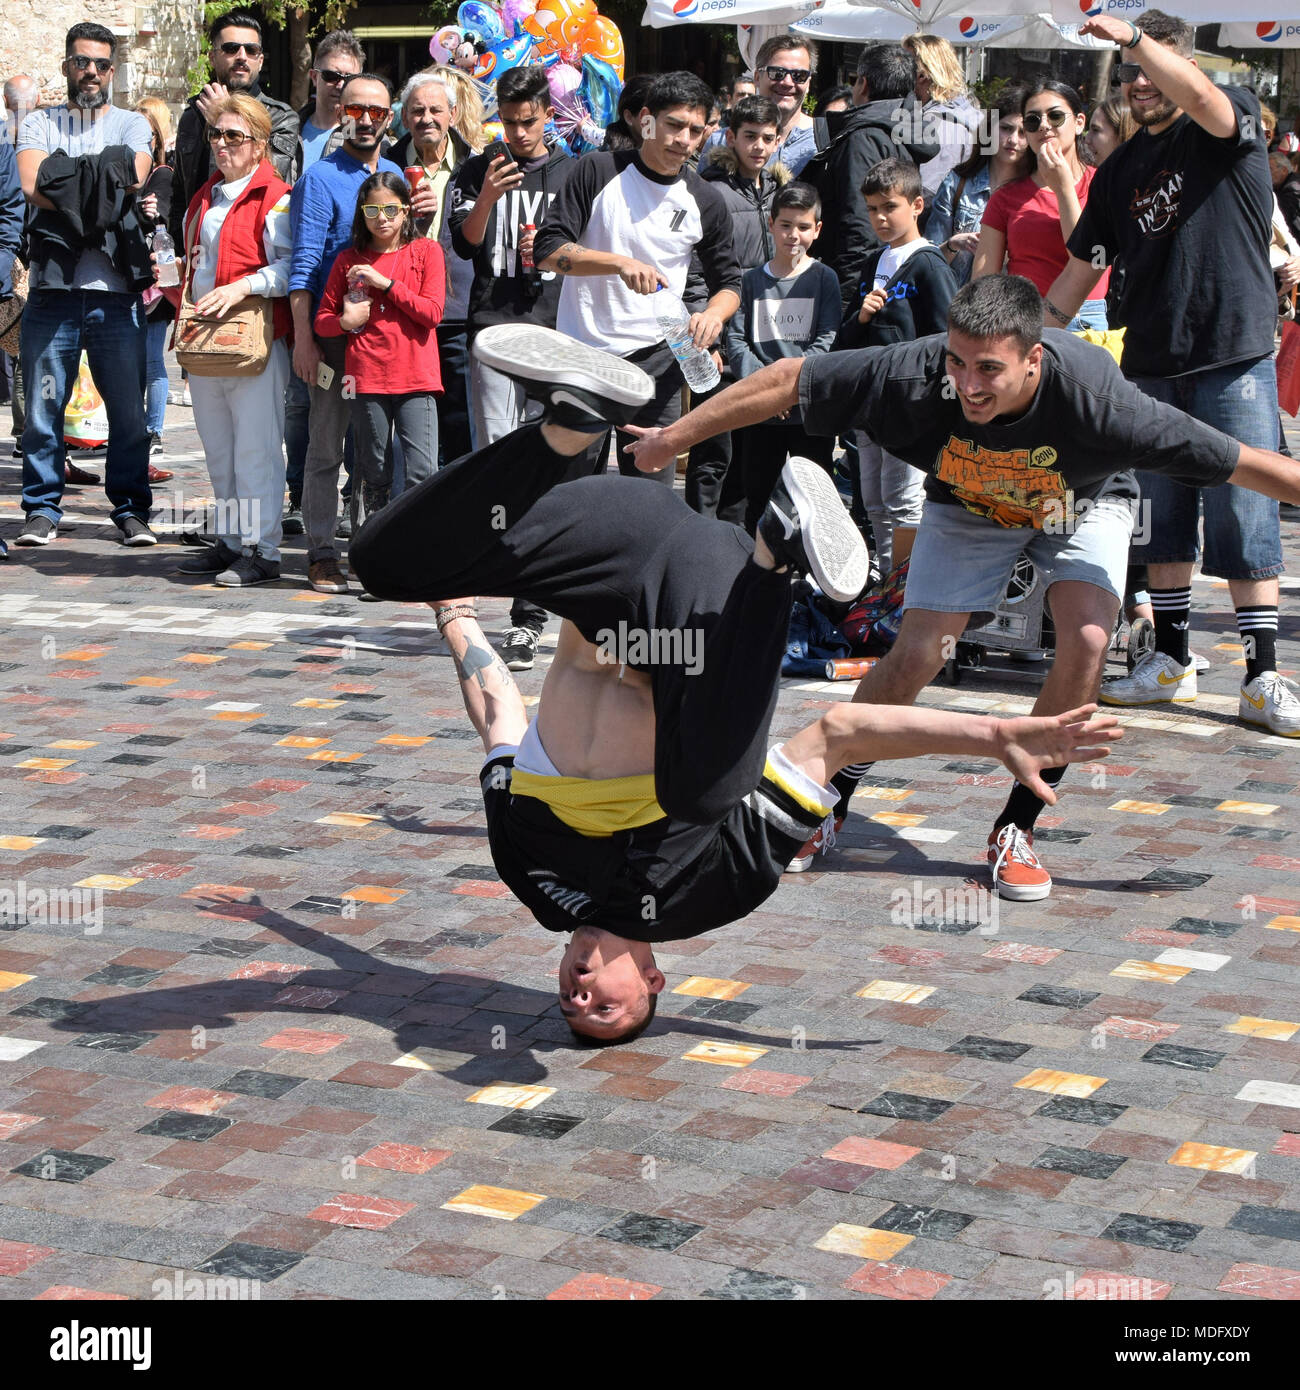 Atenas, Grecia - Abril 1, 2018: Amigos vitoreando en breakdancer como él mueve en headspin bustos una plaza pública con multitud de personas. Juventud street dance. Foto de stock